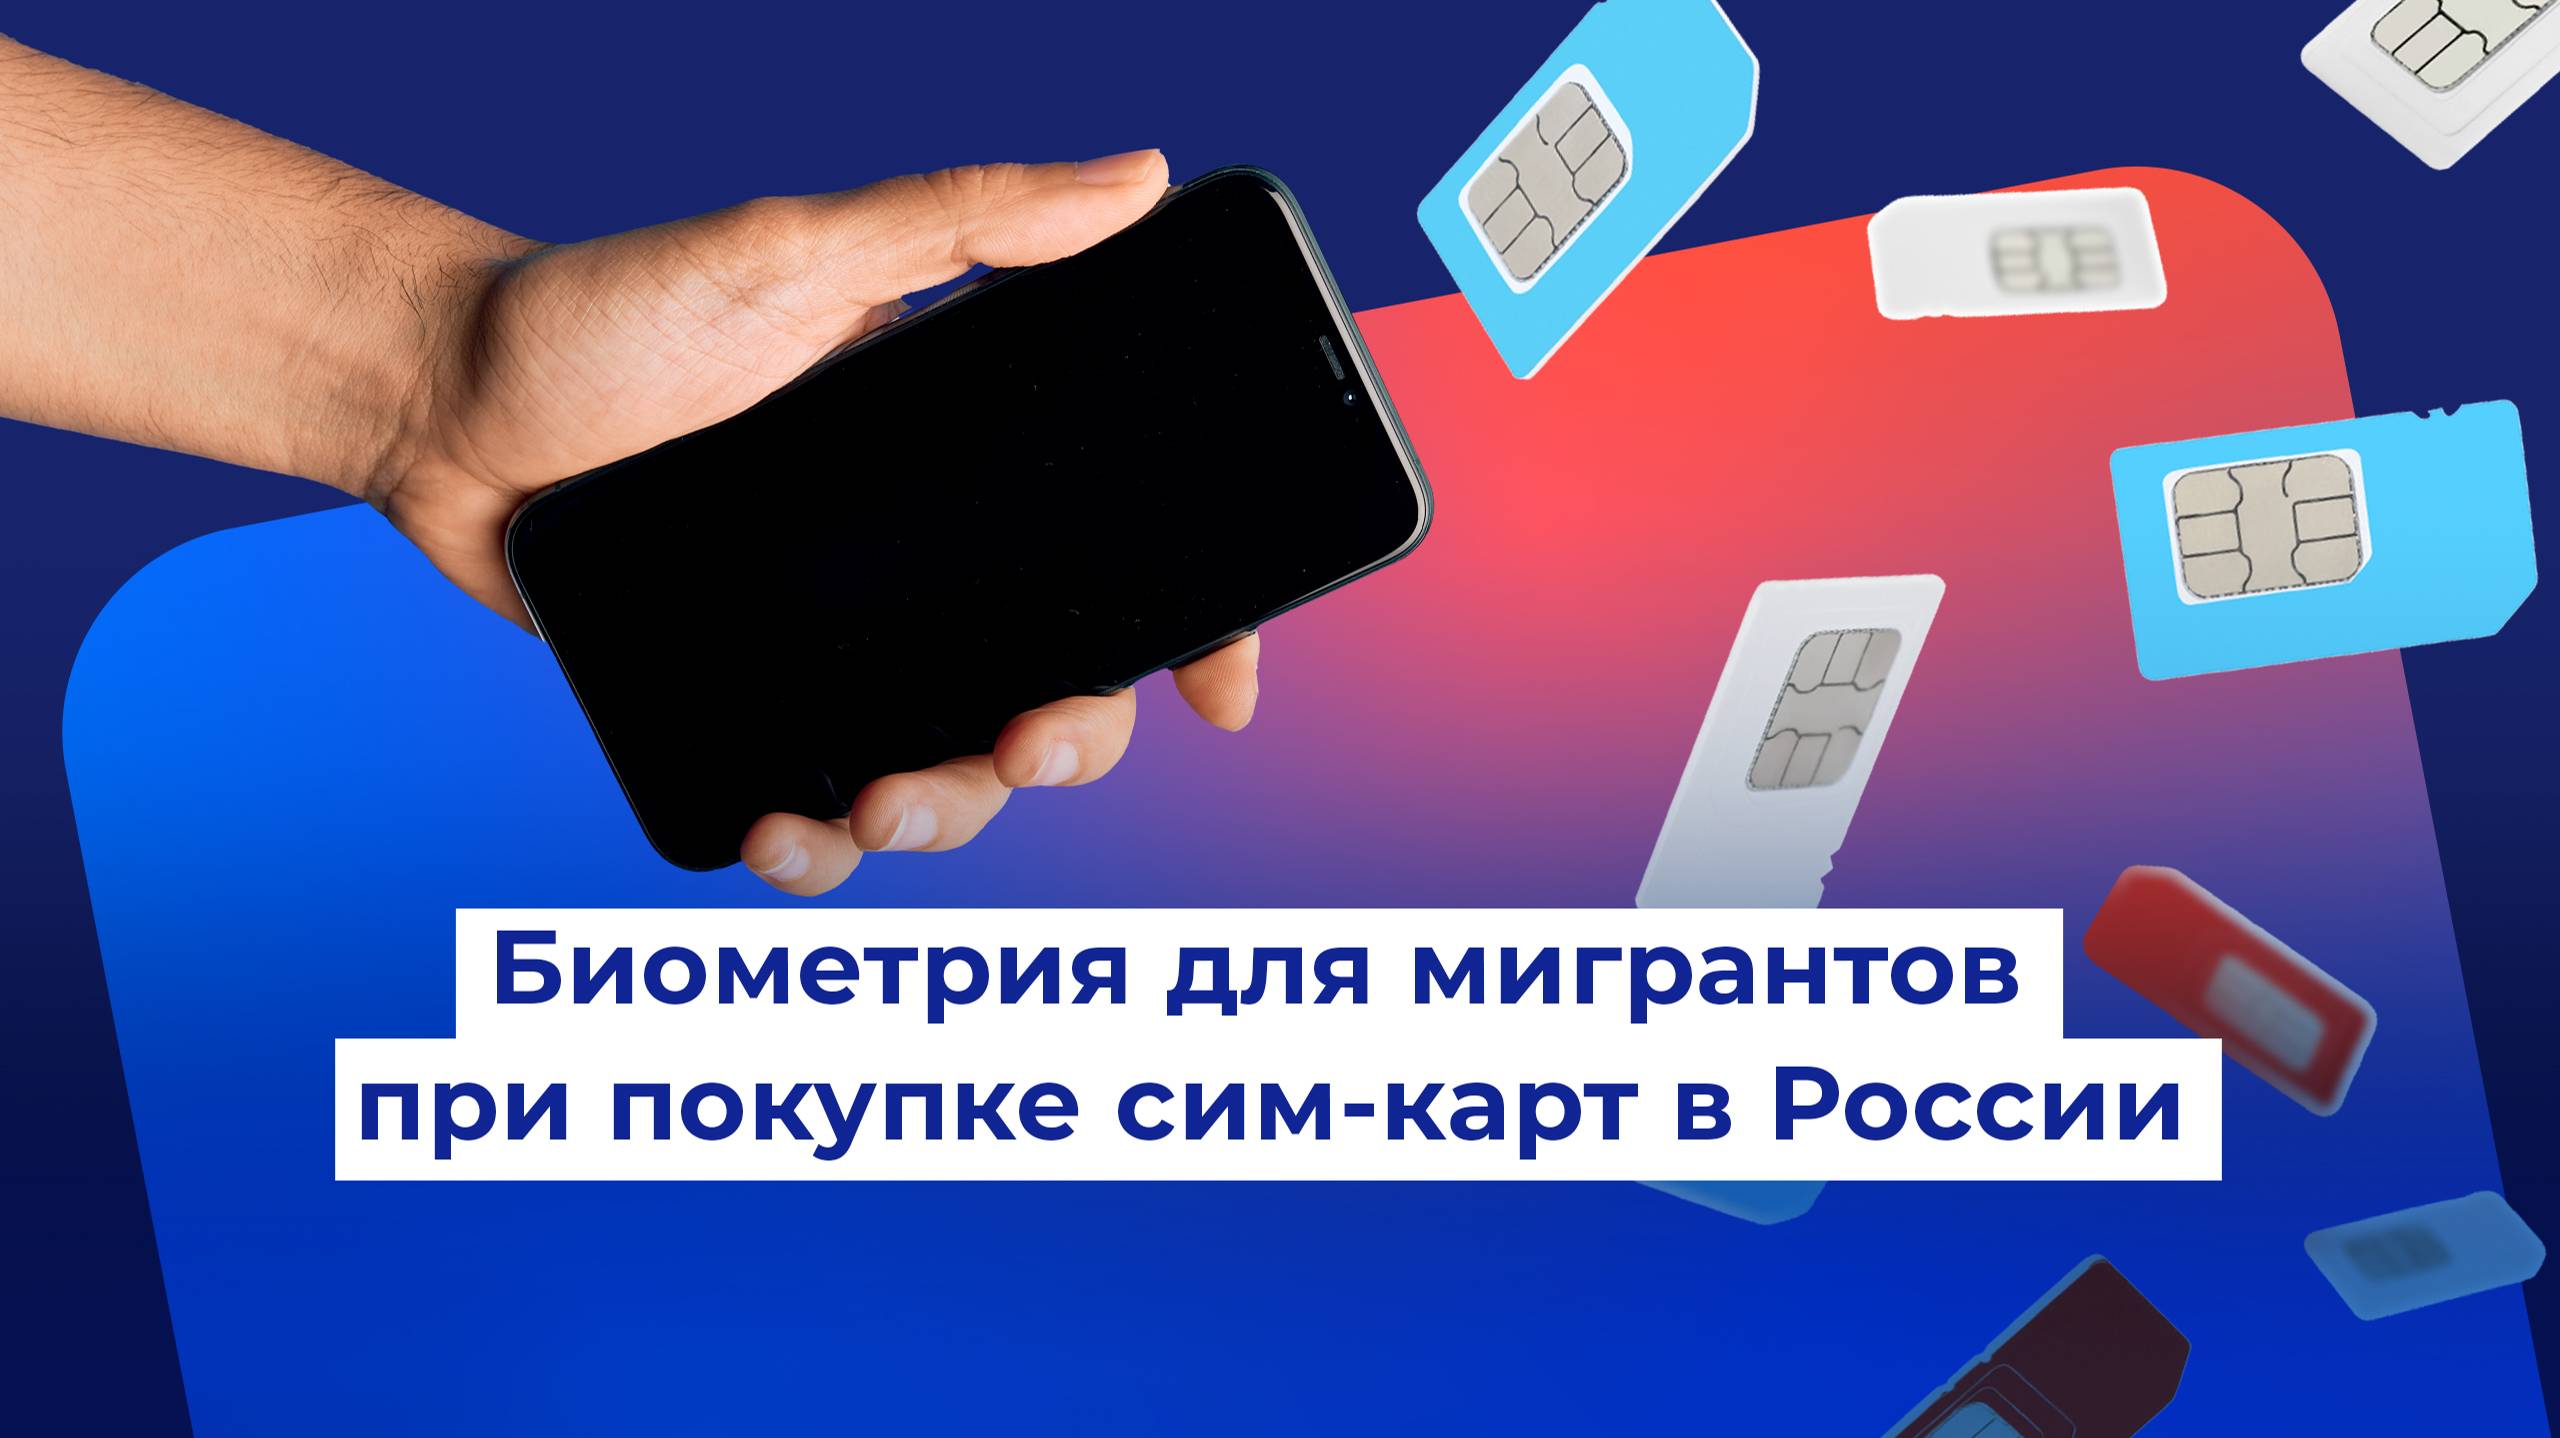 Биометрия для мигрантов при покупке сим-карт в России